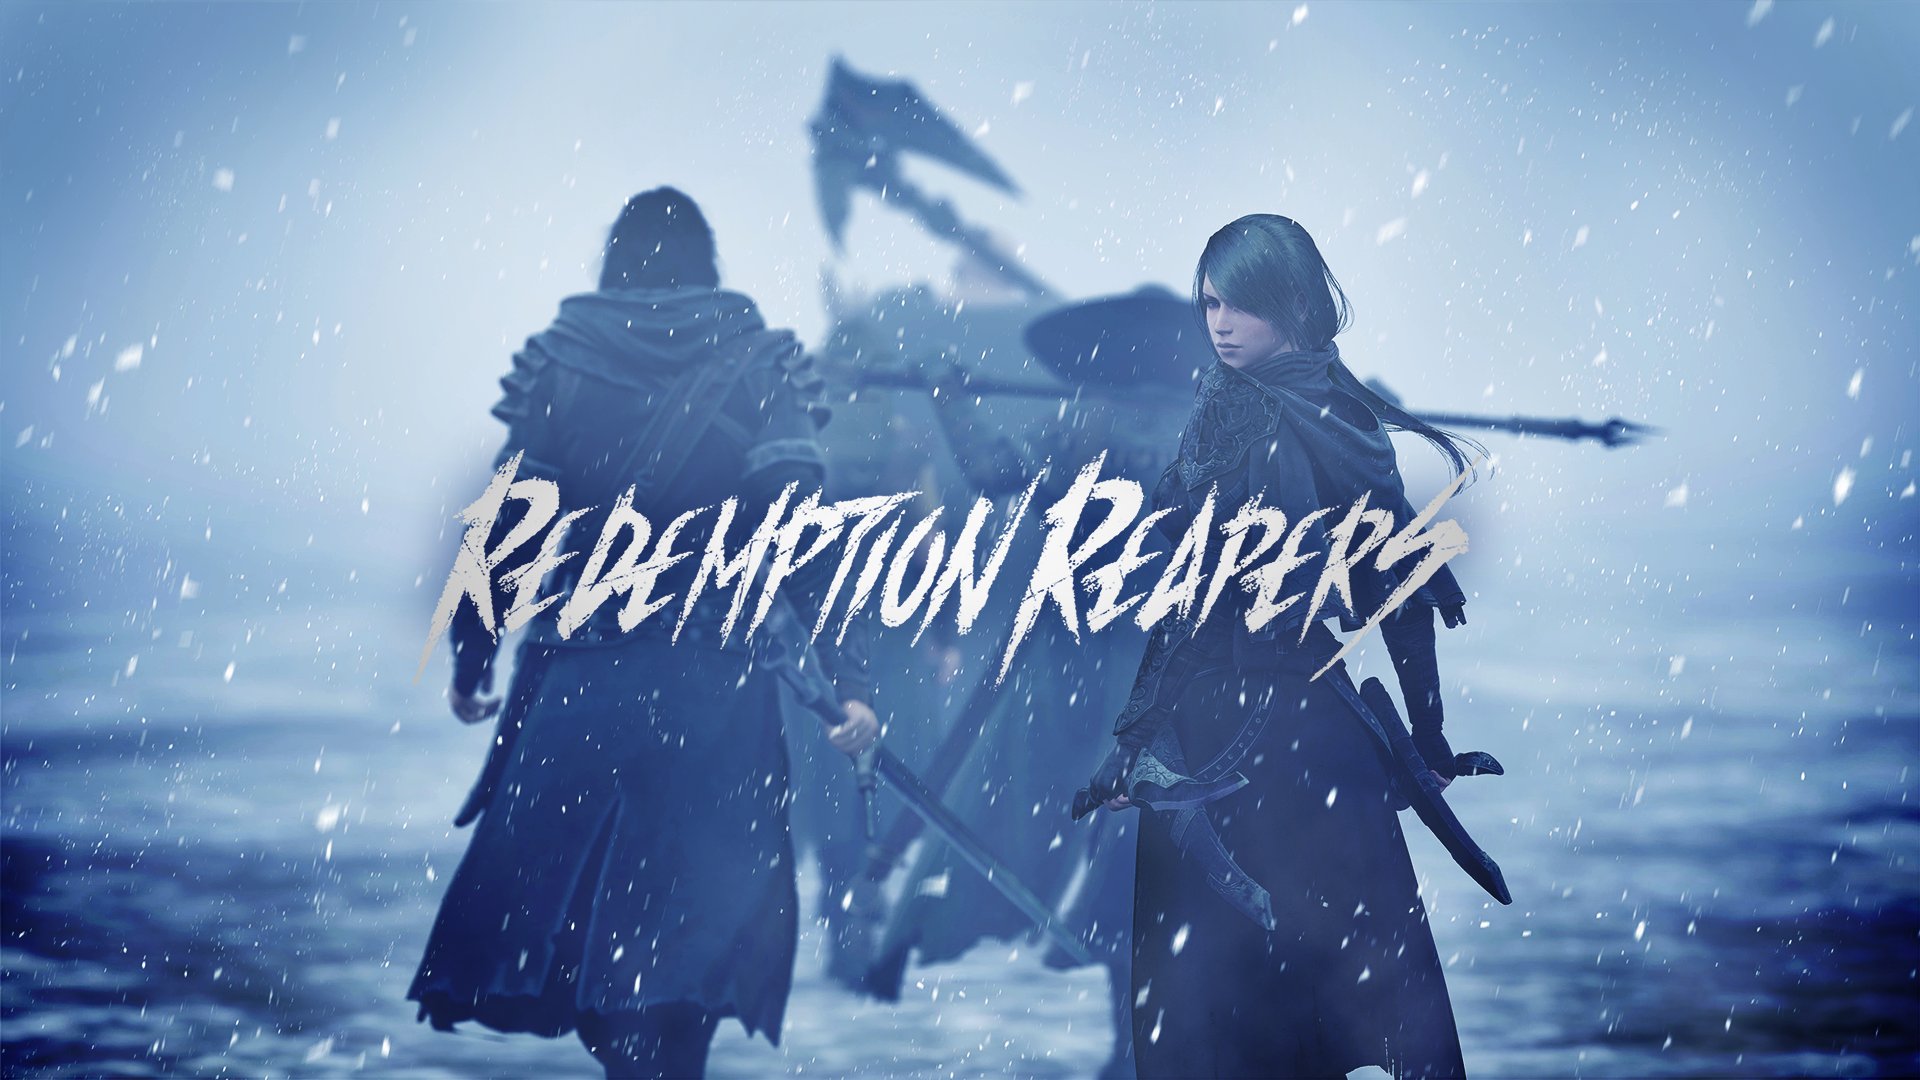 黑暗幻想風戰略模擬遊戲《Redemption Reapers》上架